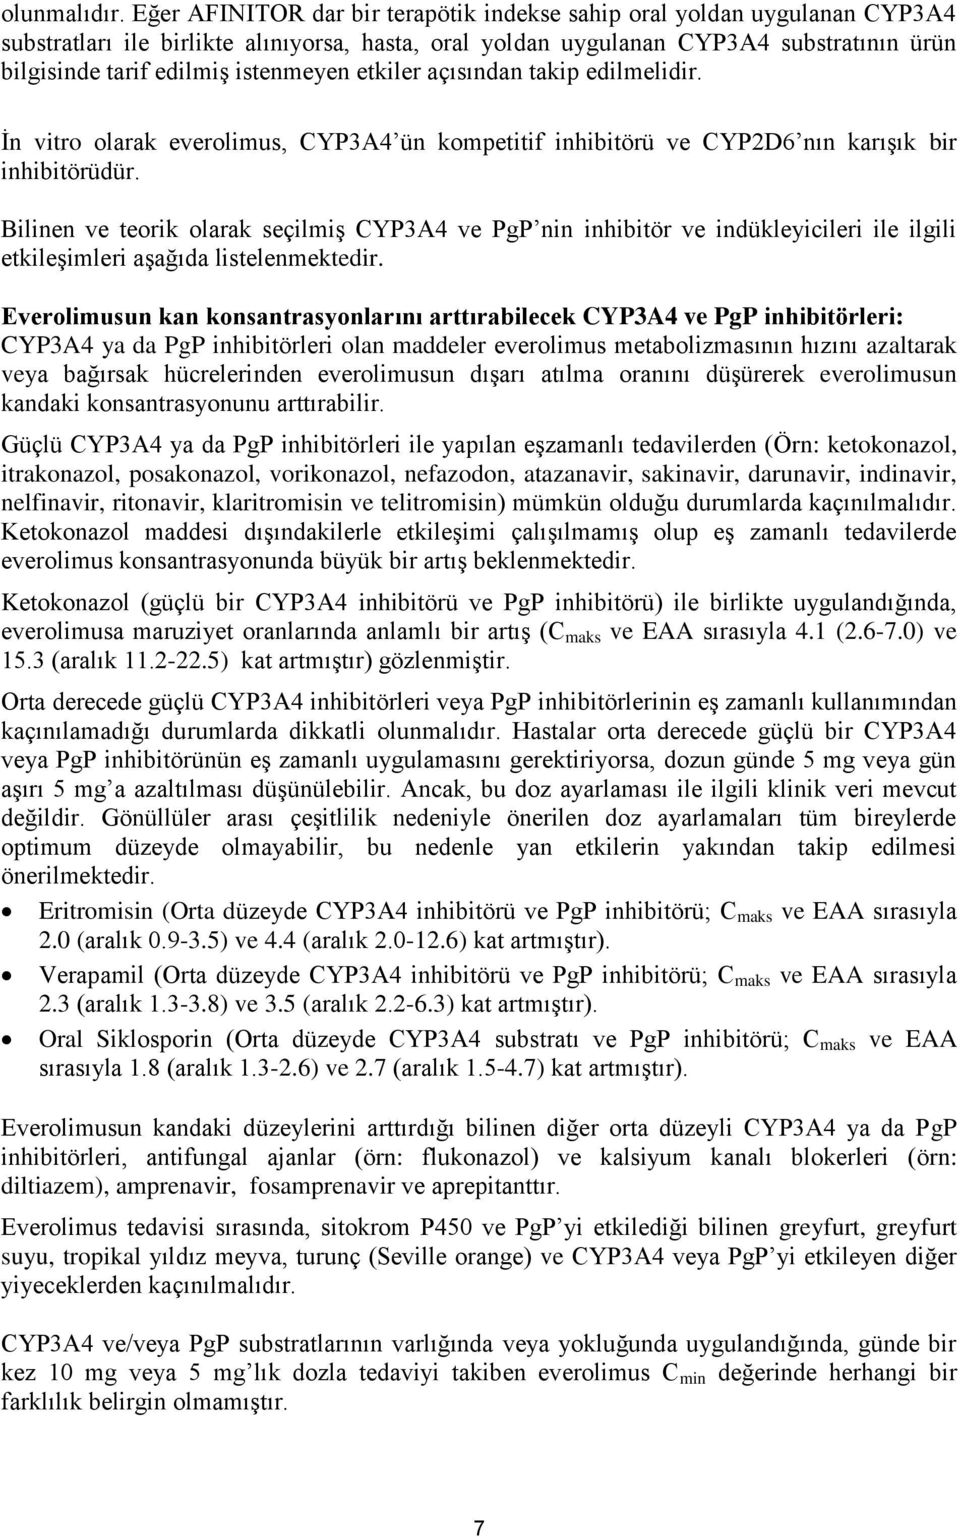 istenmeyen etkiler açısından takip edilmelidir. İn vitro olarak everolimus, CYP3A4 ün kompetitif inhibitörü ve CYP2D6 nın karışık bir inhibitörüdür.